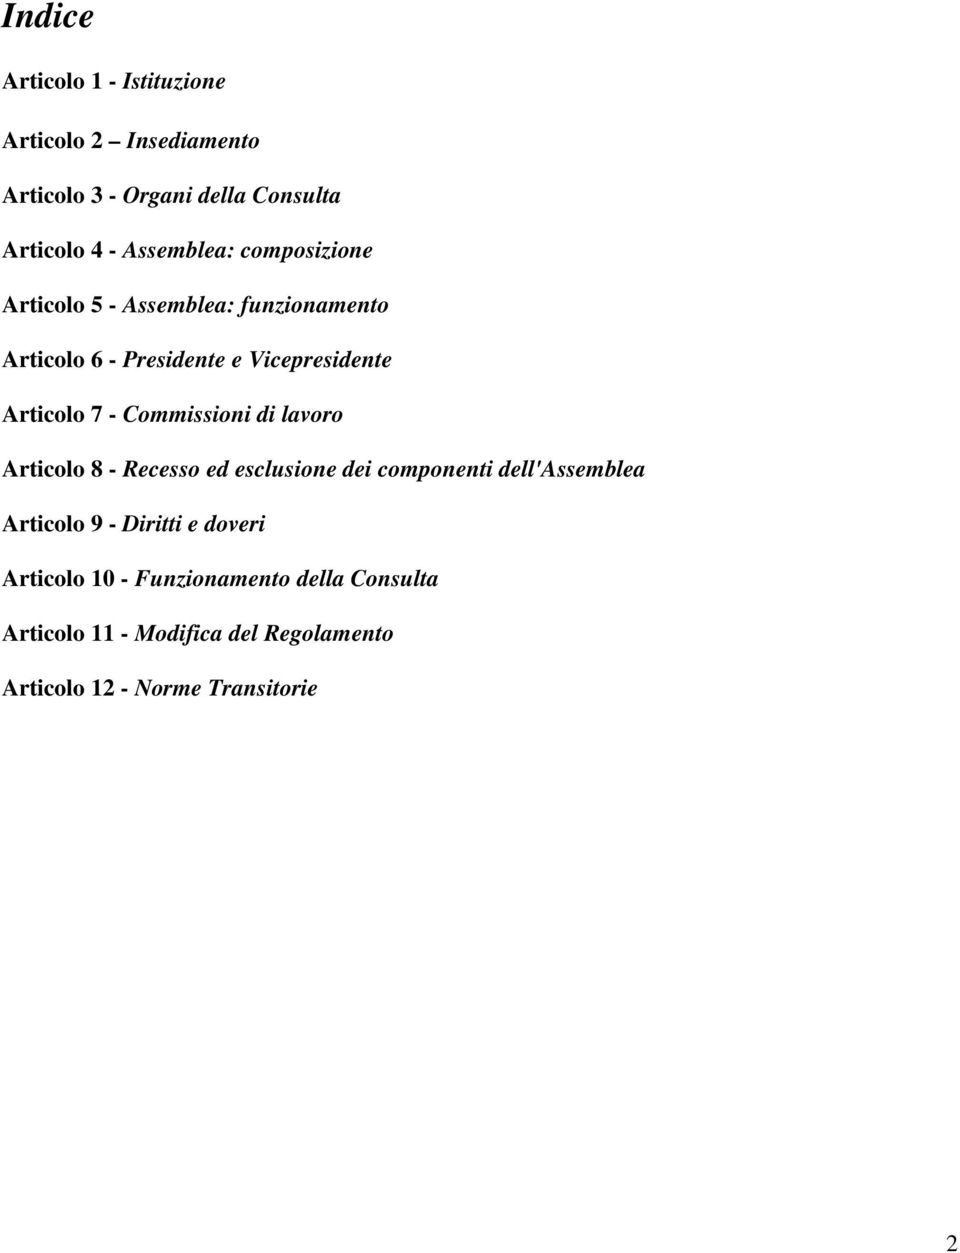 7 - Commissioni di lavoro Articolo 8 - Recesso ed esclusione dei componenti dell'assemblea Articolo 9 - Diritti